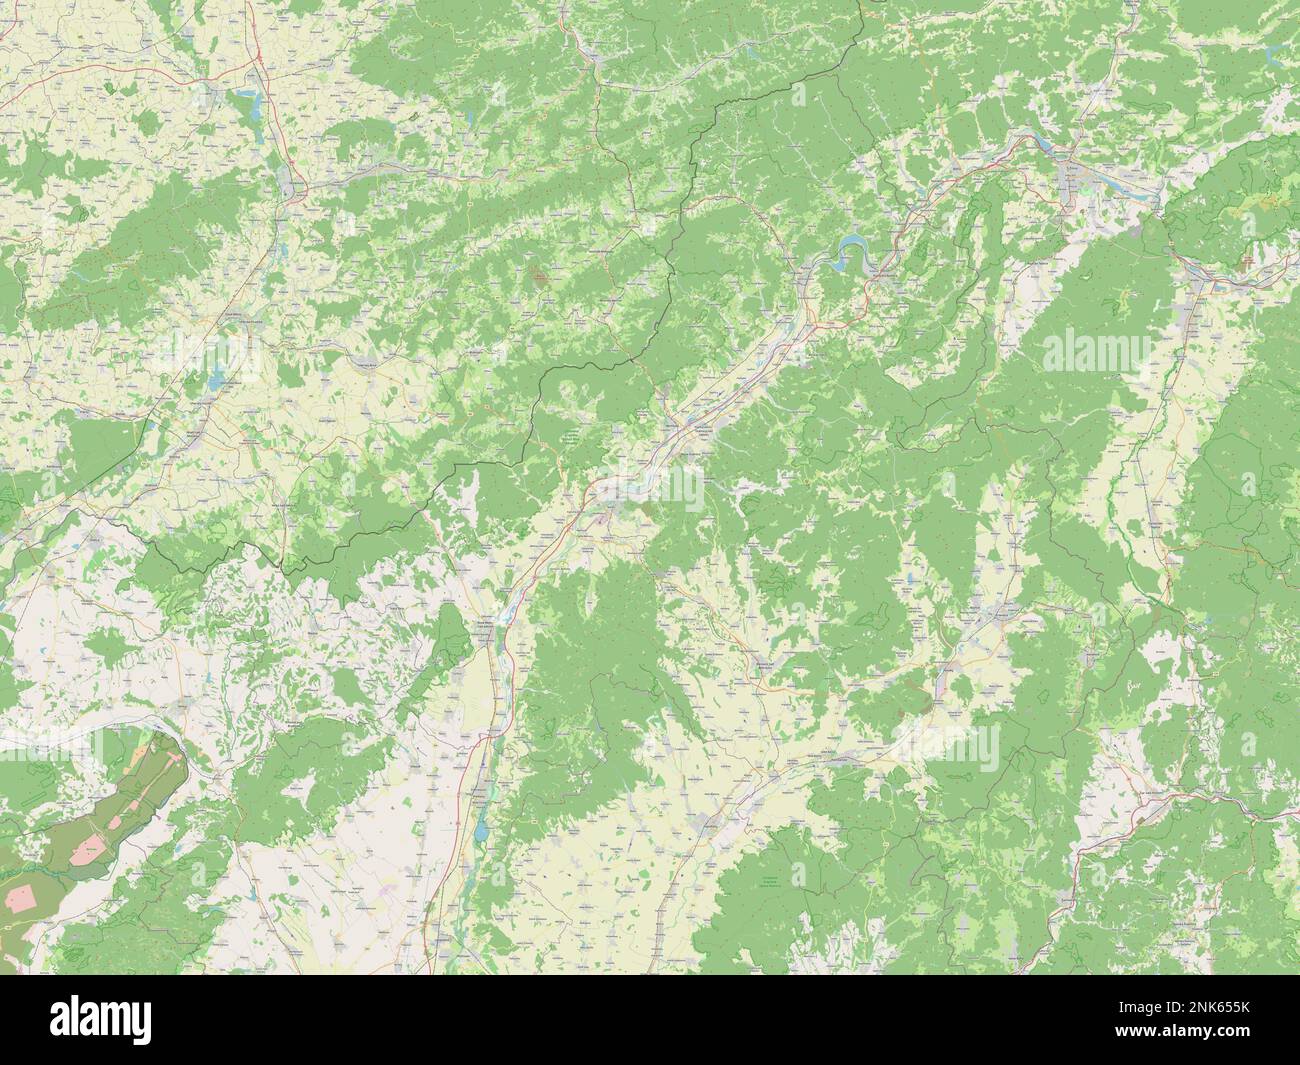 Trenciansky, region of Slovakia. Open Street Map Stock Photo